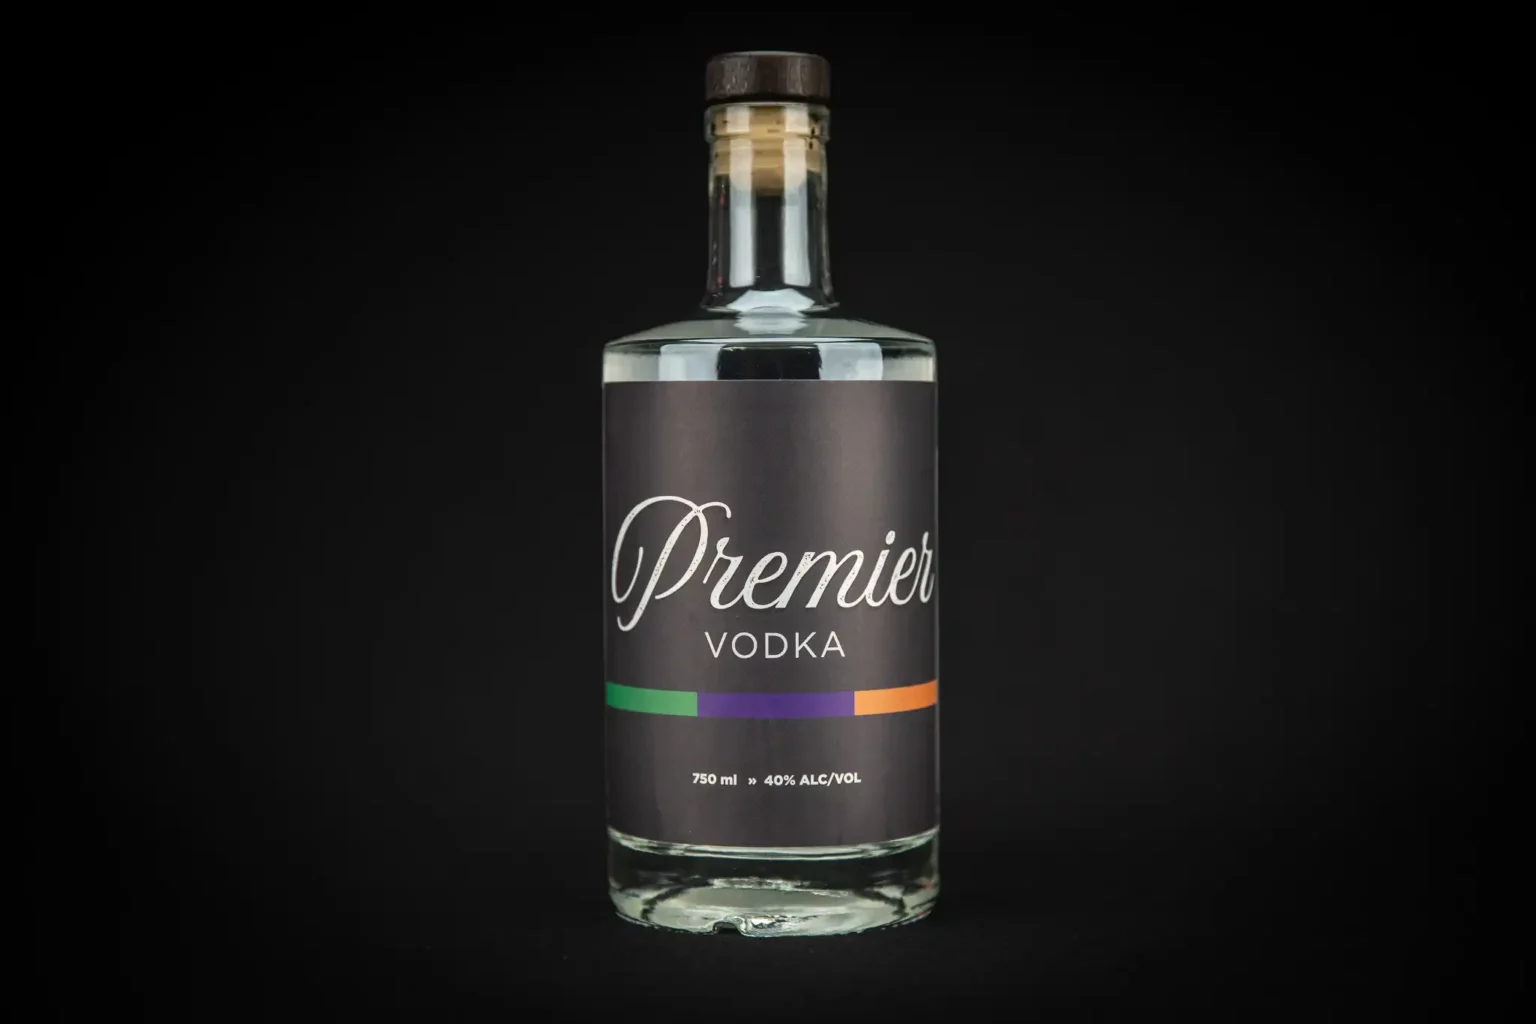 featured-spirit-premier-vodka